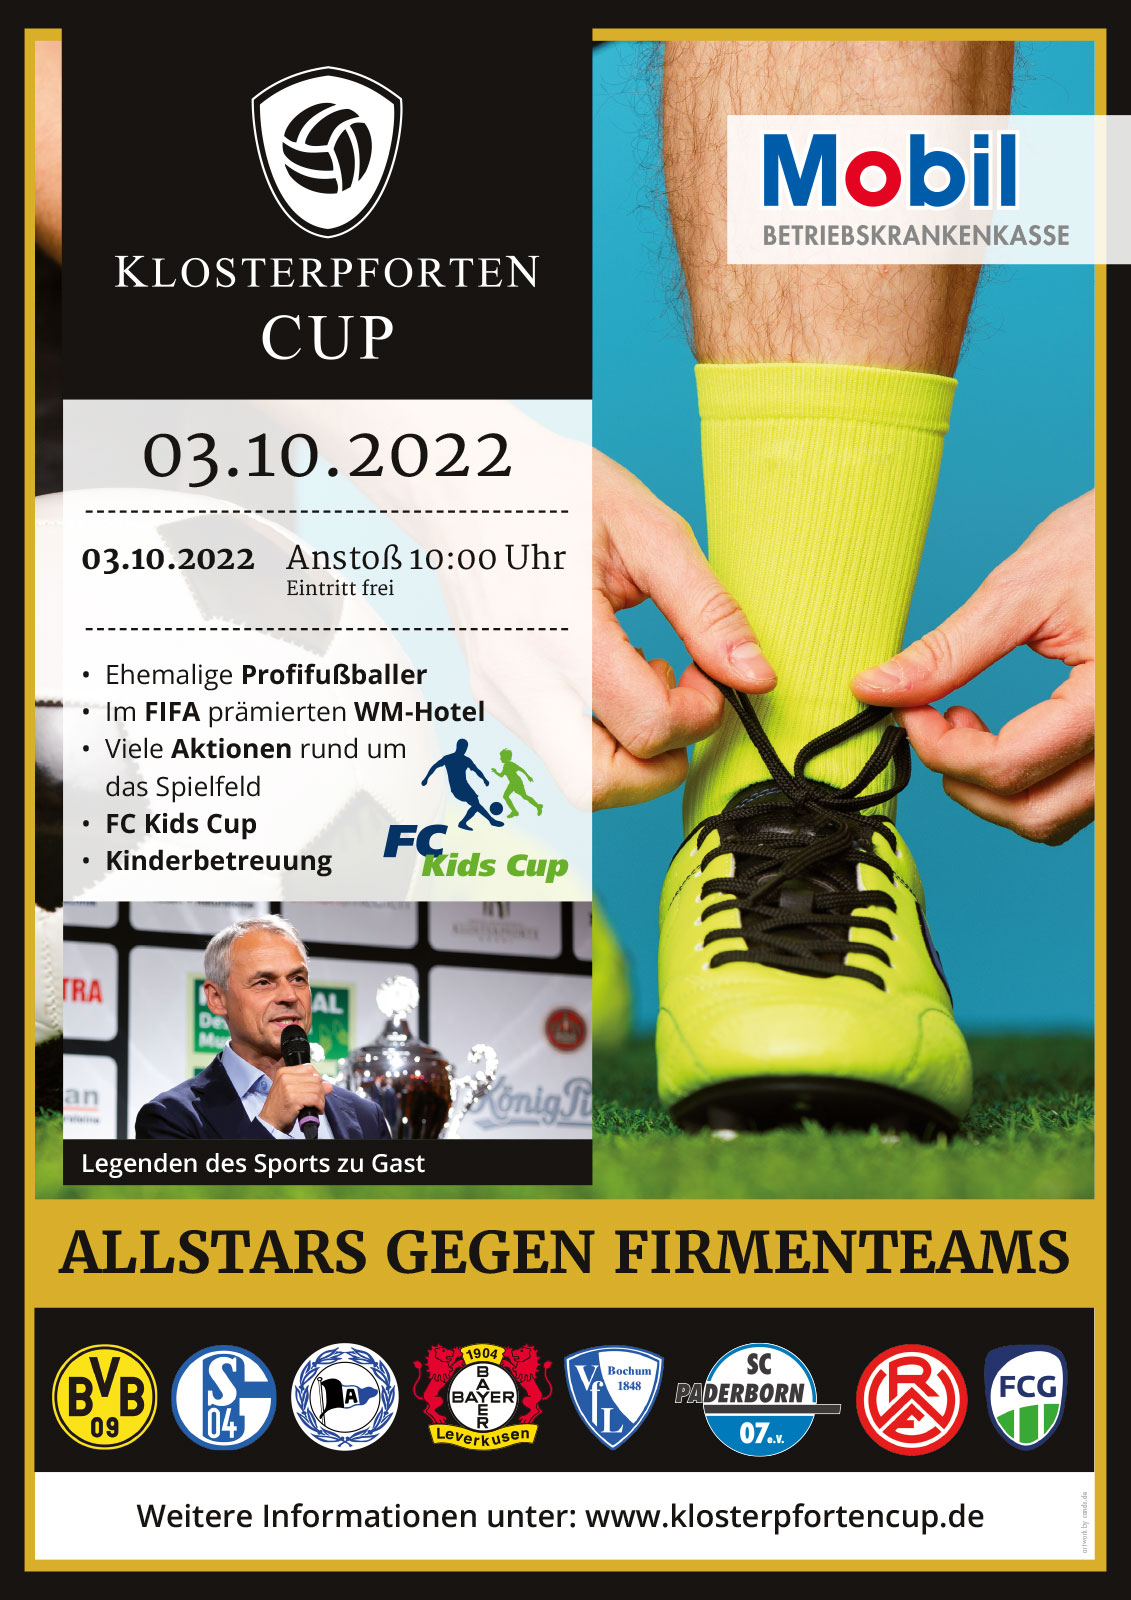 Klosterpforten Cup 2022